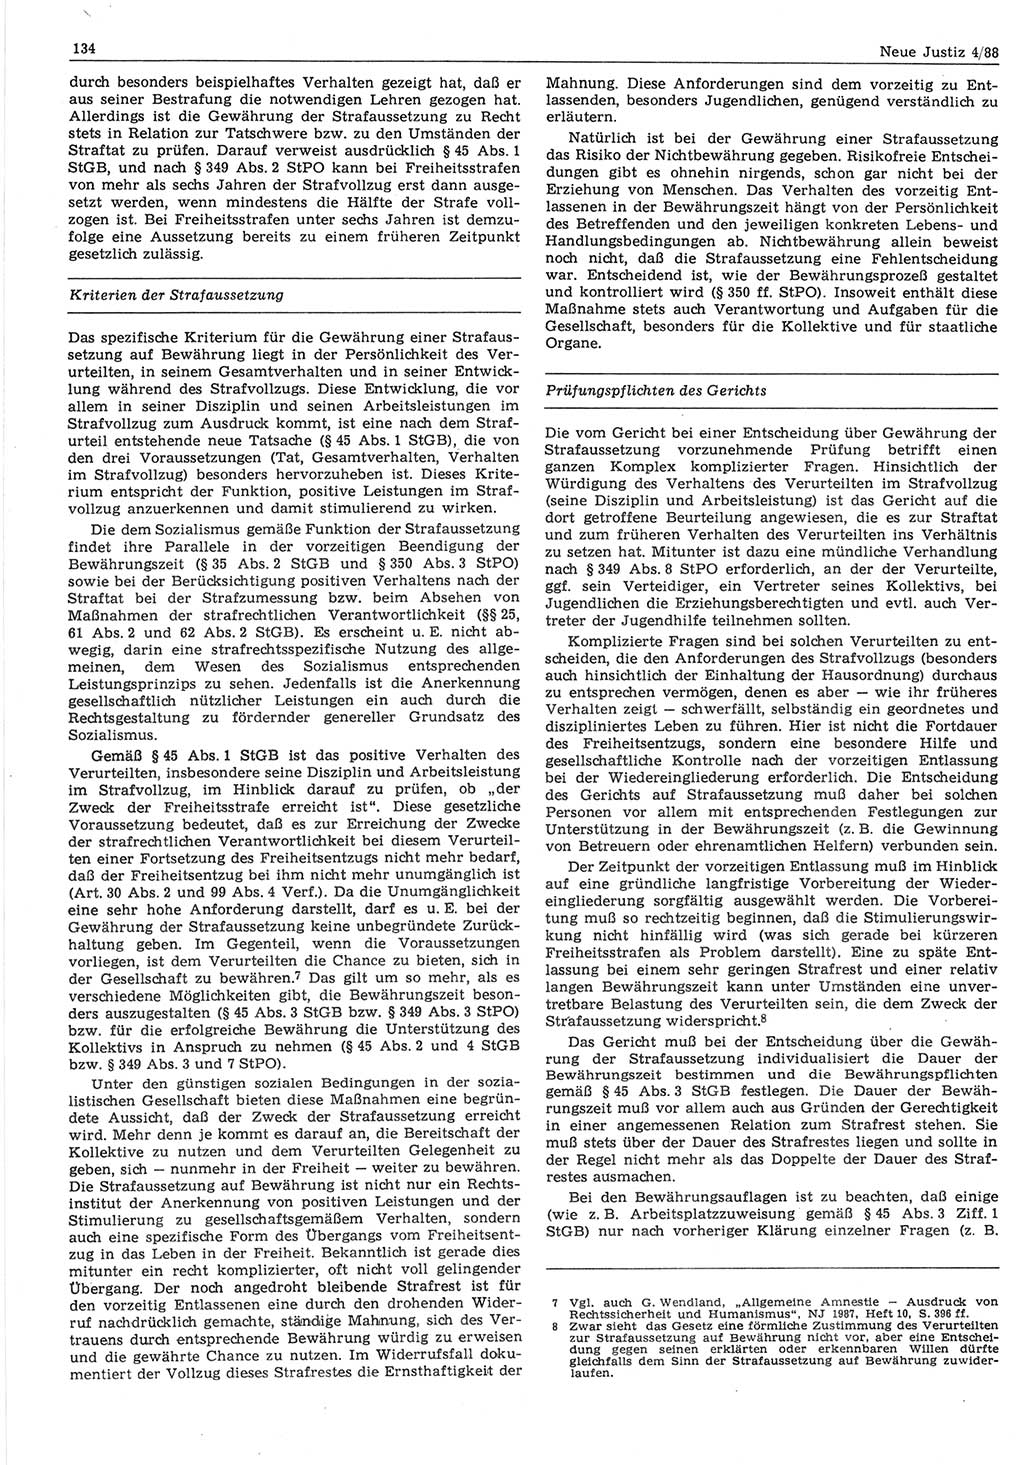 Neue Justiz (NJ), Zeitschrift für sozialistisches Recht und Gesetzlichkeit [Deutsche Demokratische Republik (DDR)], 42. Jahrgang 1988, Seite 134 (NJ DDR 1988, S. 134)